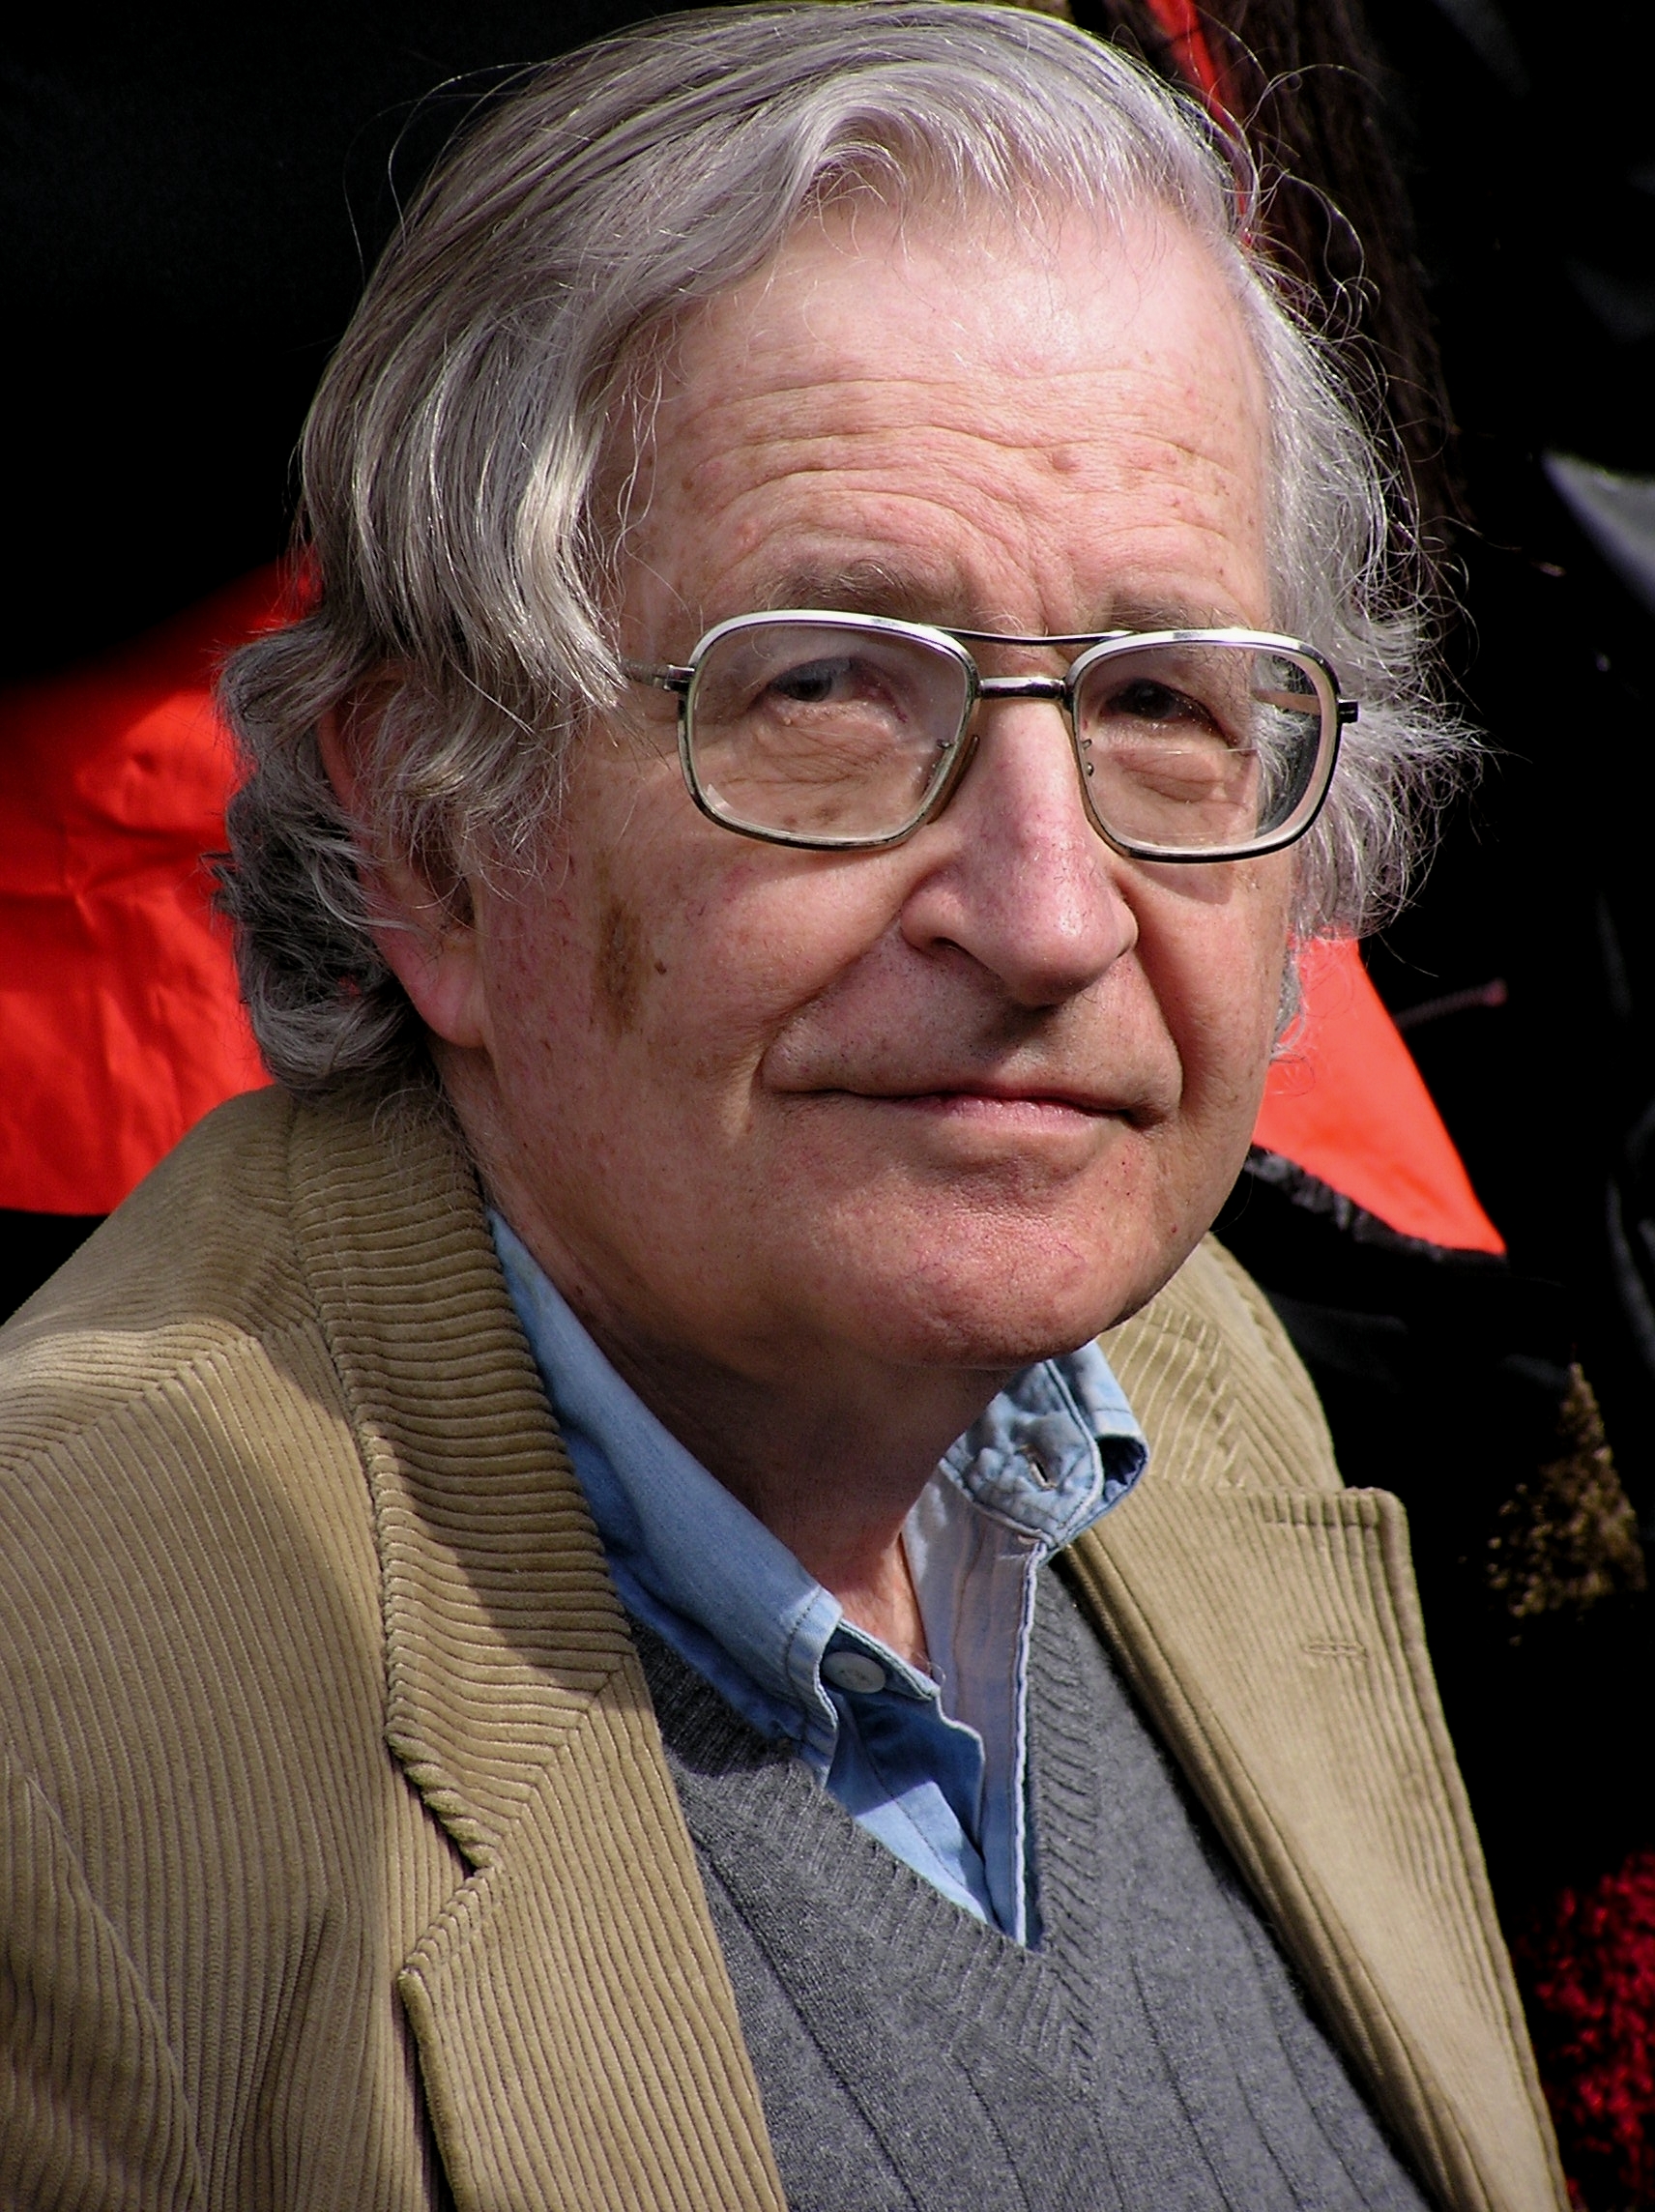 Quali sono le opinioni politiche di Noam Chomsky?